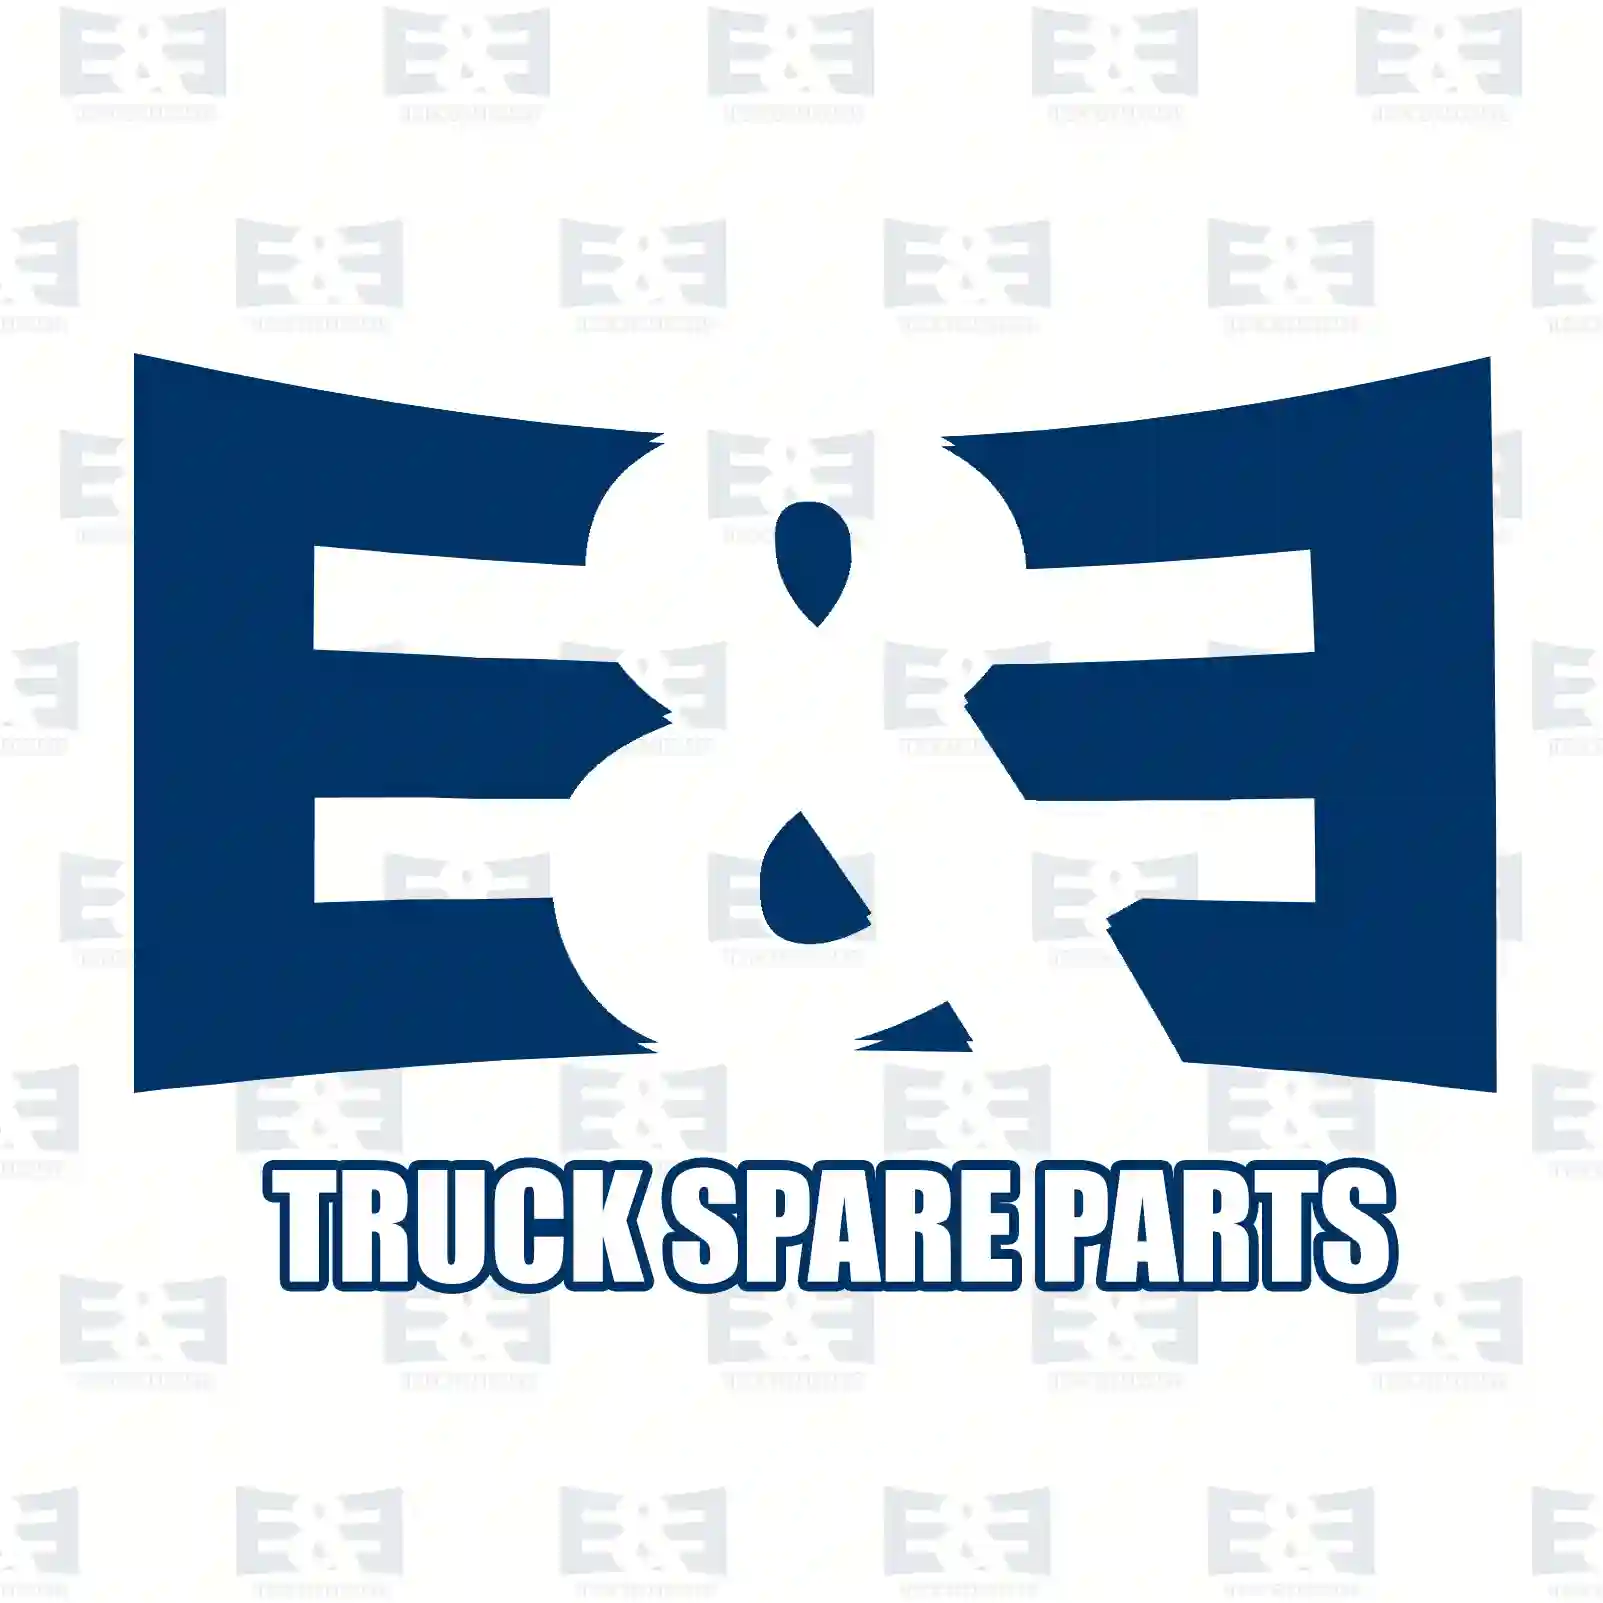 Shock absorber, 2E2283489, 462218, 406694, 410554, 415848, 426218, 429163, 460081, 468191, 410554, 415848, 426218, 429163, 429164, 468188, 468191, 470263, 475915, 481967 ||  2E2283489 E&E Truck Spare Parts | Truck Spare Parts, Auotomotive Spare Parts Shock absorber, 2E2283489, 462218, 406694, 410554, 415848, 426218, 429163, 460081, 468191, 410554, 415848, 426218, 429163, 429164, 468188, 468191, 470263, 475915, 481967 ||  2E2283489 E&E Truck Spare Parts | Truck Spare Parts, Auotomotive Spare Parts